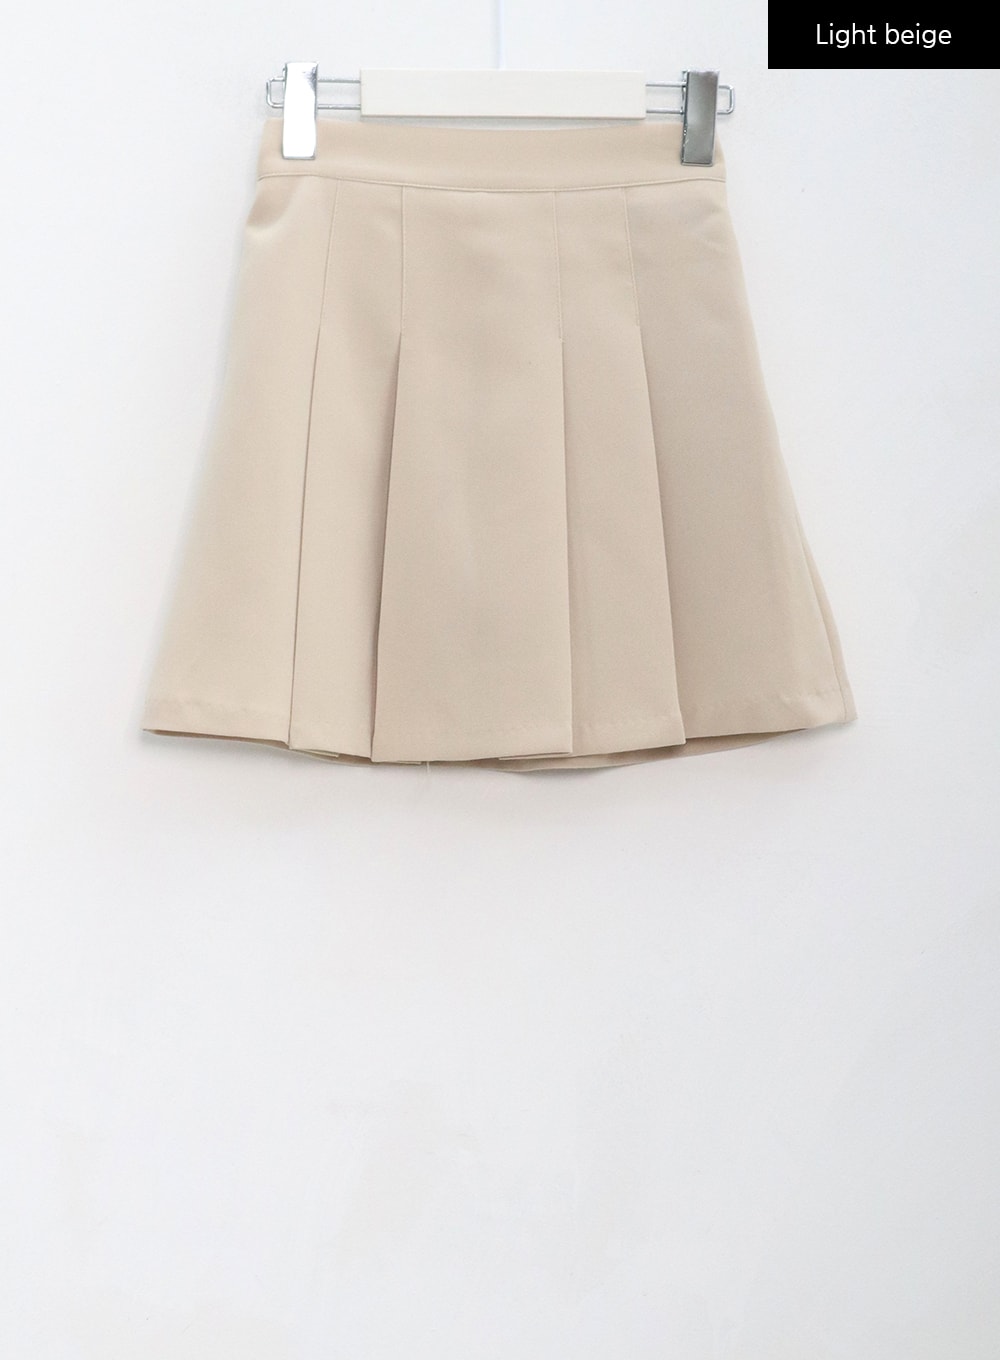 Double Pintuck Mini Skirt BG26